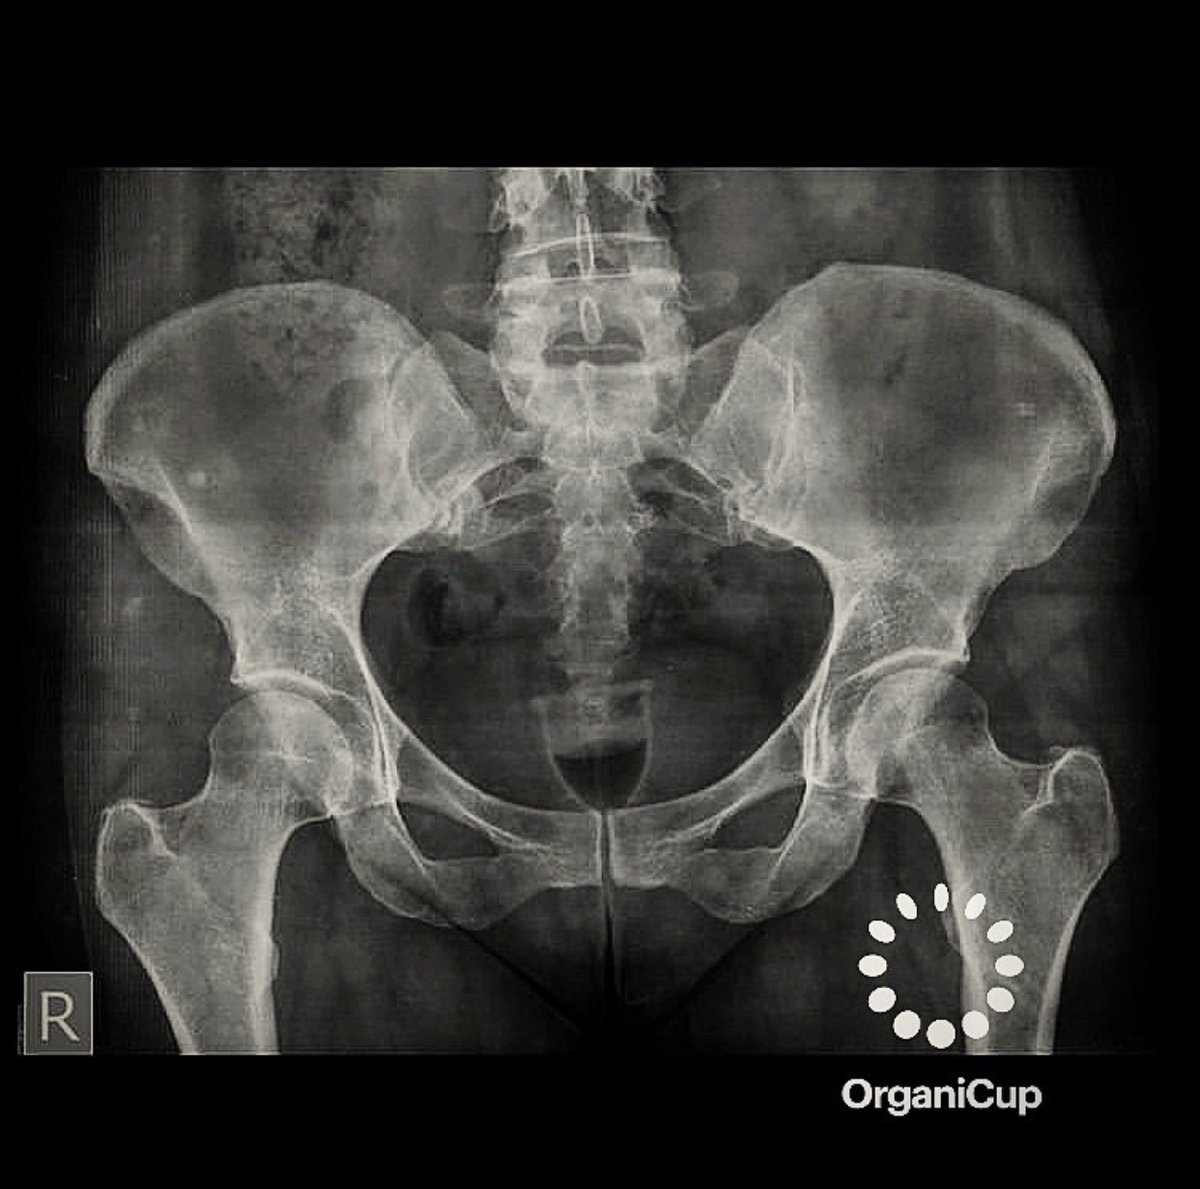 Regl kabı röntgene yansırsa? 😍

allmatters.com.tr 

#regl #reglkabı #adetkabı #menstrualcup #organicup #allmatters #ped #tampon #adetdönemi #reglsancısı #kramp